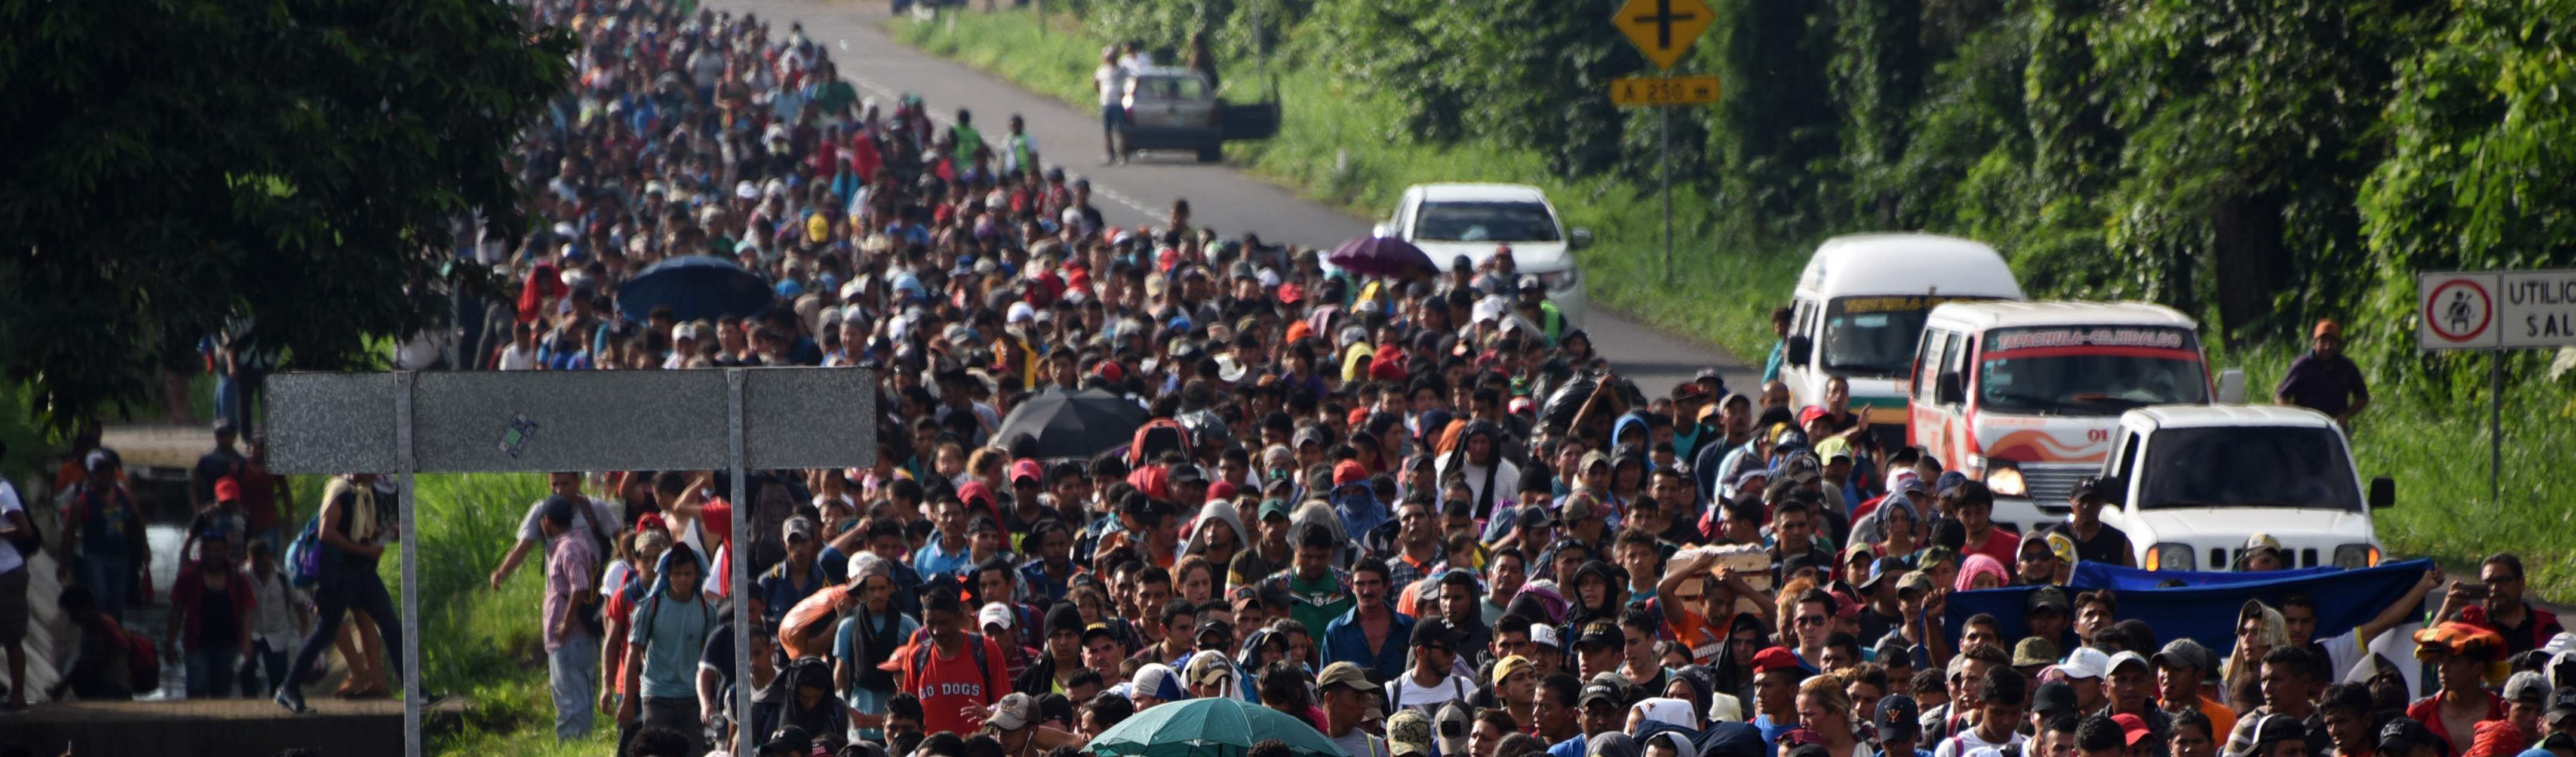 Caravana de imigrantes enfrenta cada vez mais repressão, mas segue rumo aos EUA